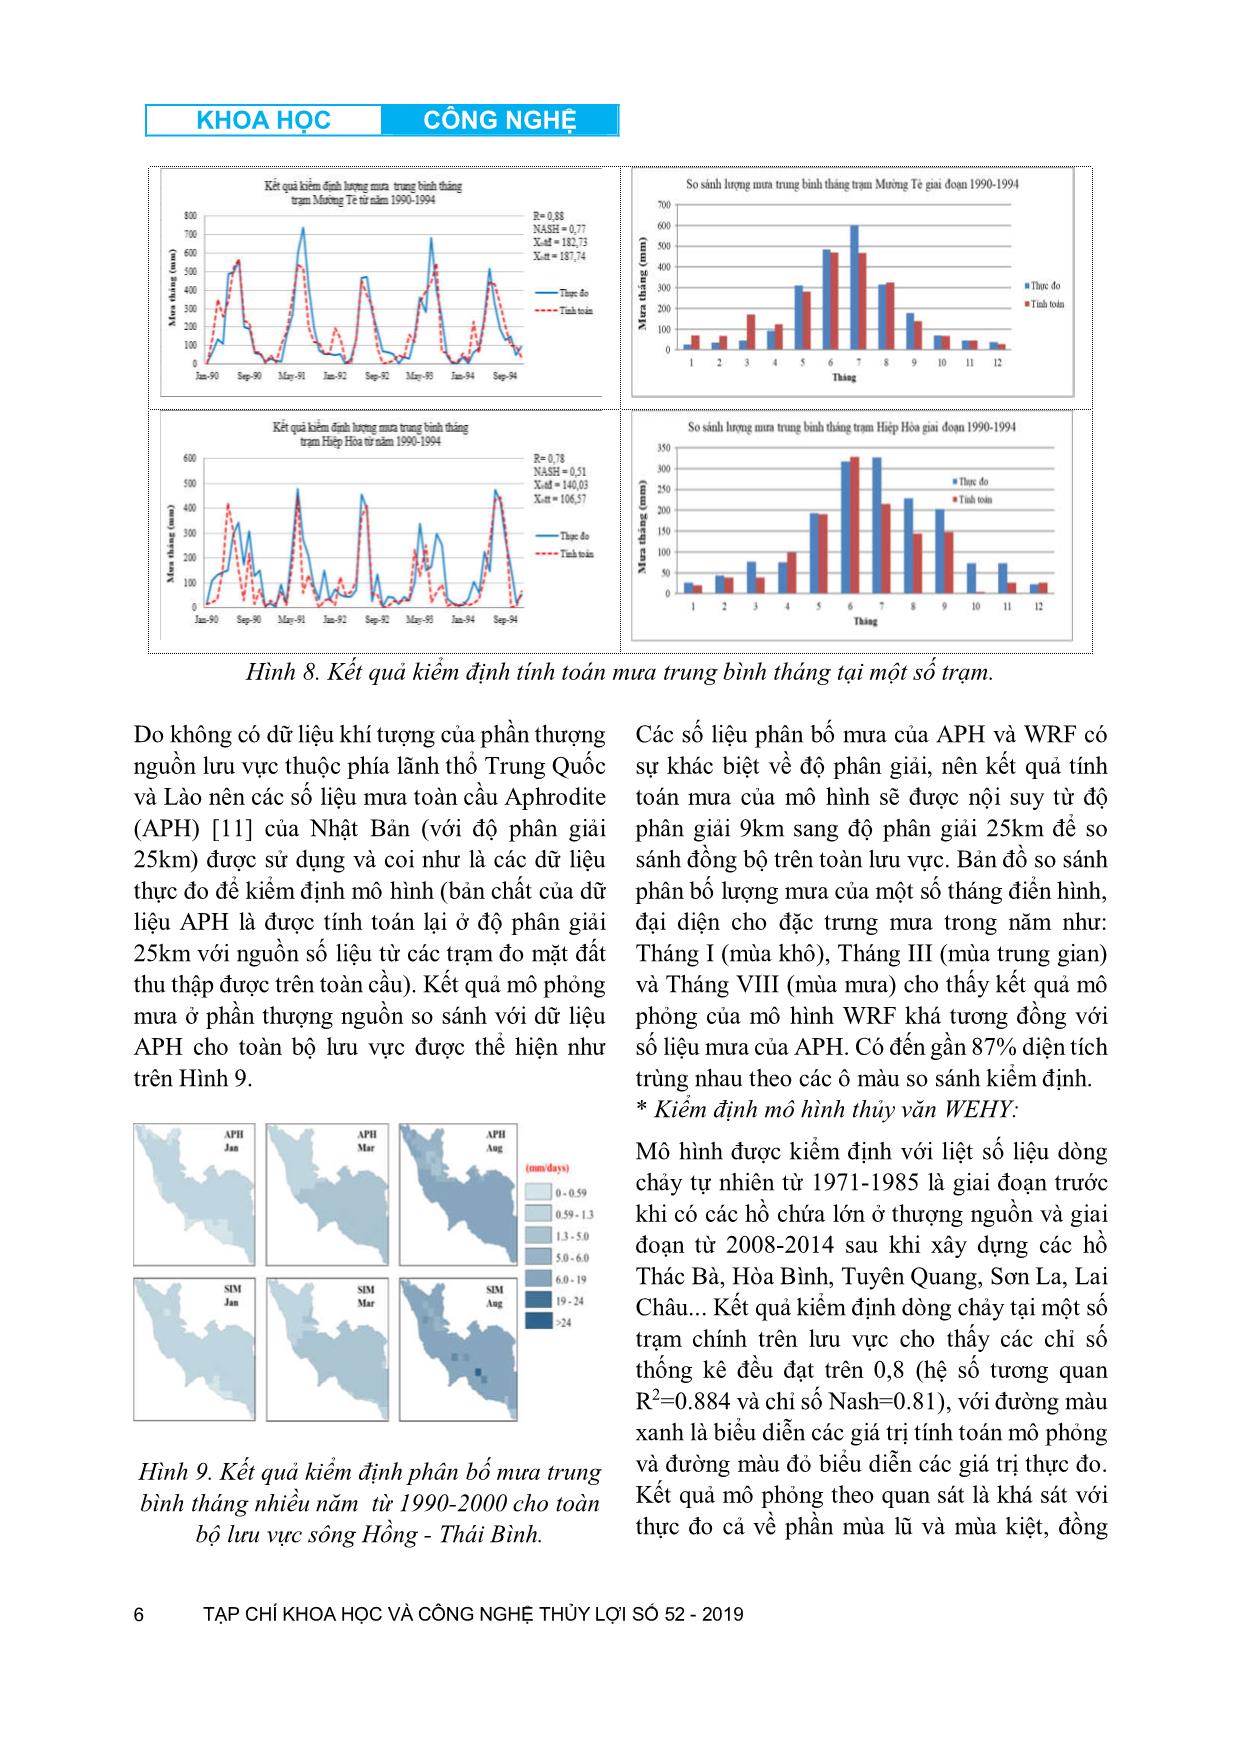 Nghiên cứu diễn biến hạn hán trên lưu vực sông Hồng - Thái Bình bằng bộ dữ liệu khí tượng, thủy văn khôi phục từ mô hình kết hợp Wehy-Wrf trang 6